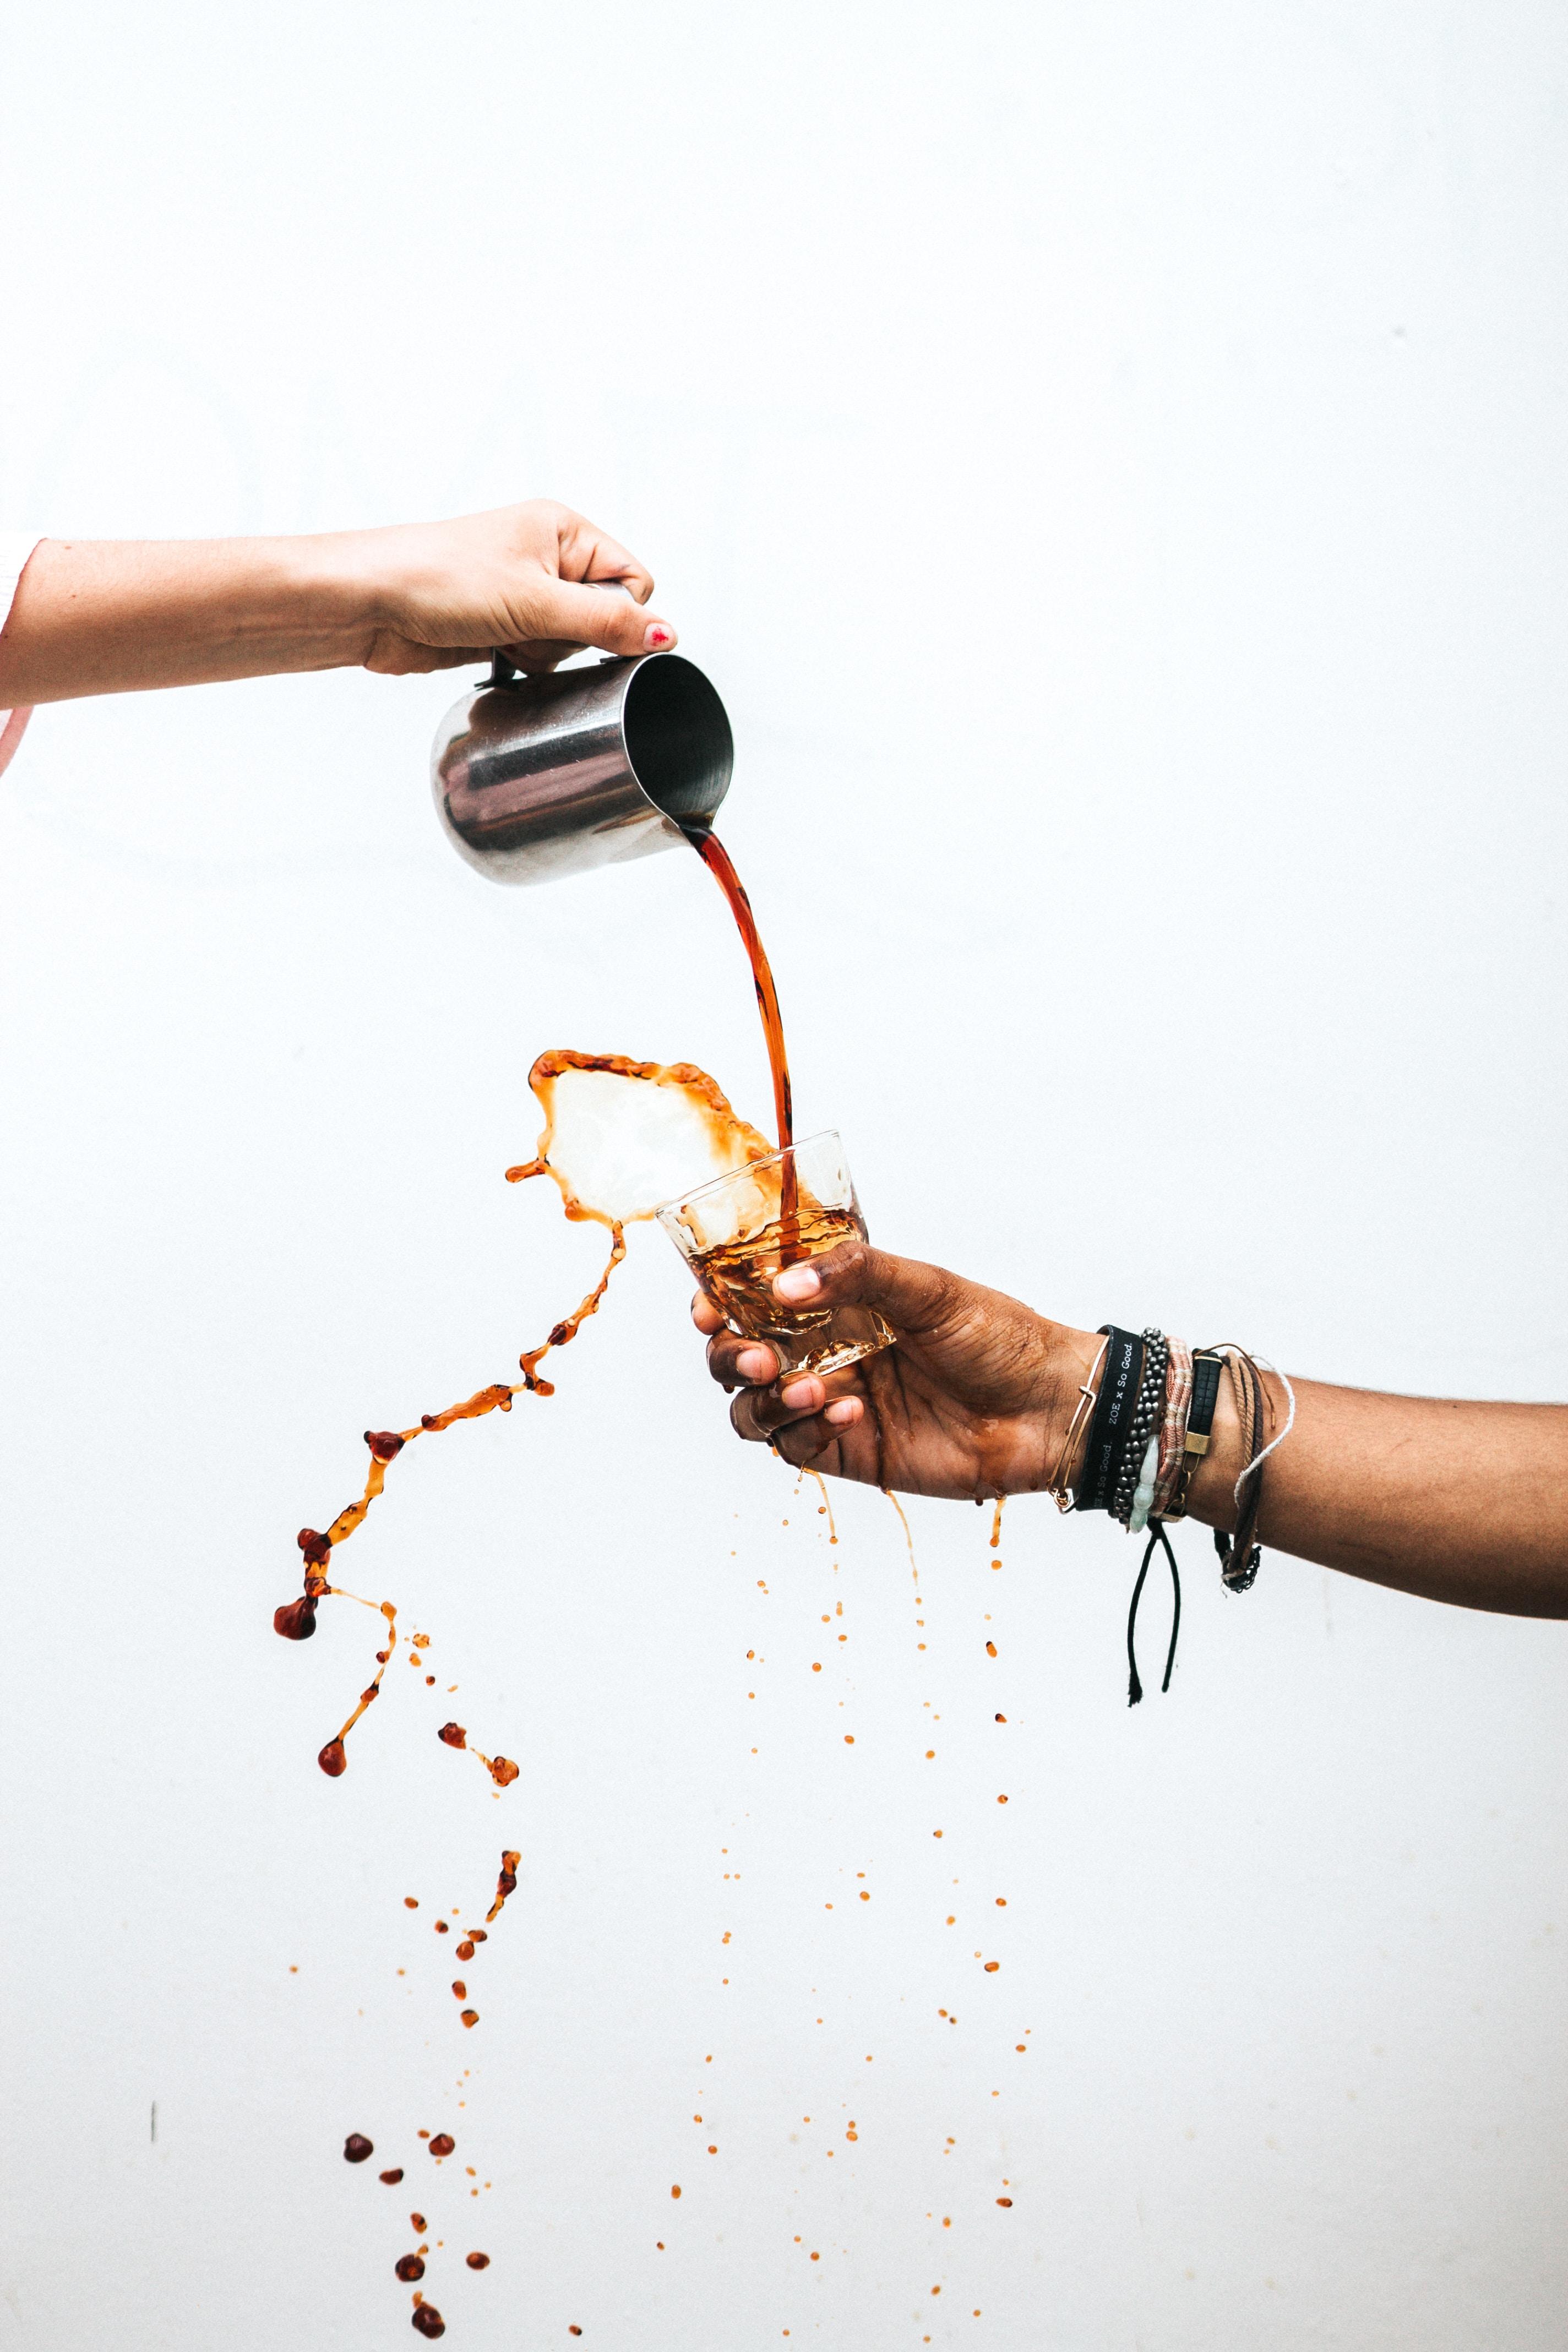 Kawa z cytryną na odchudzanie - czy to ma sens? Czy kawa z cytryną wspomaga odchudzanie? Nowy trend bije rekordy popularności. Dodaj do kawy cytrynę co pomaga schudnąć 